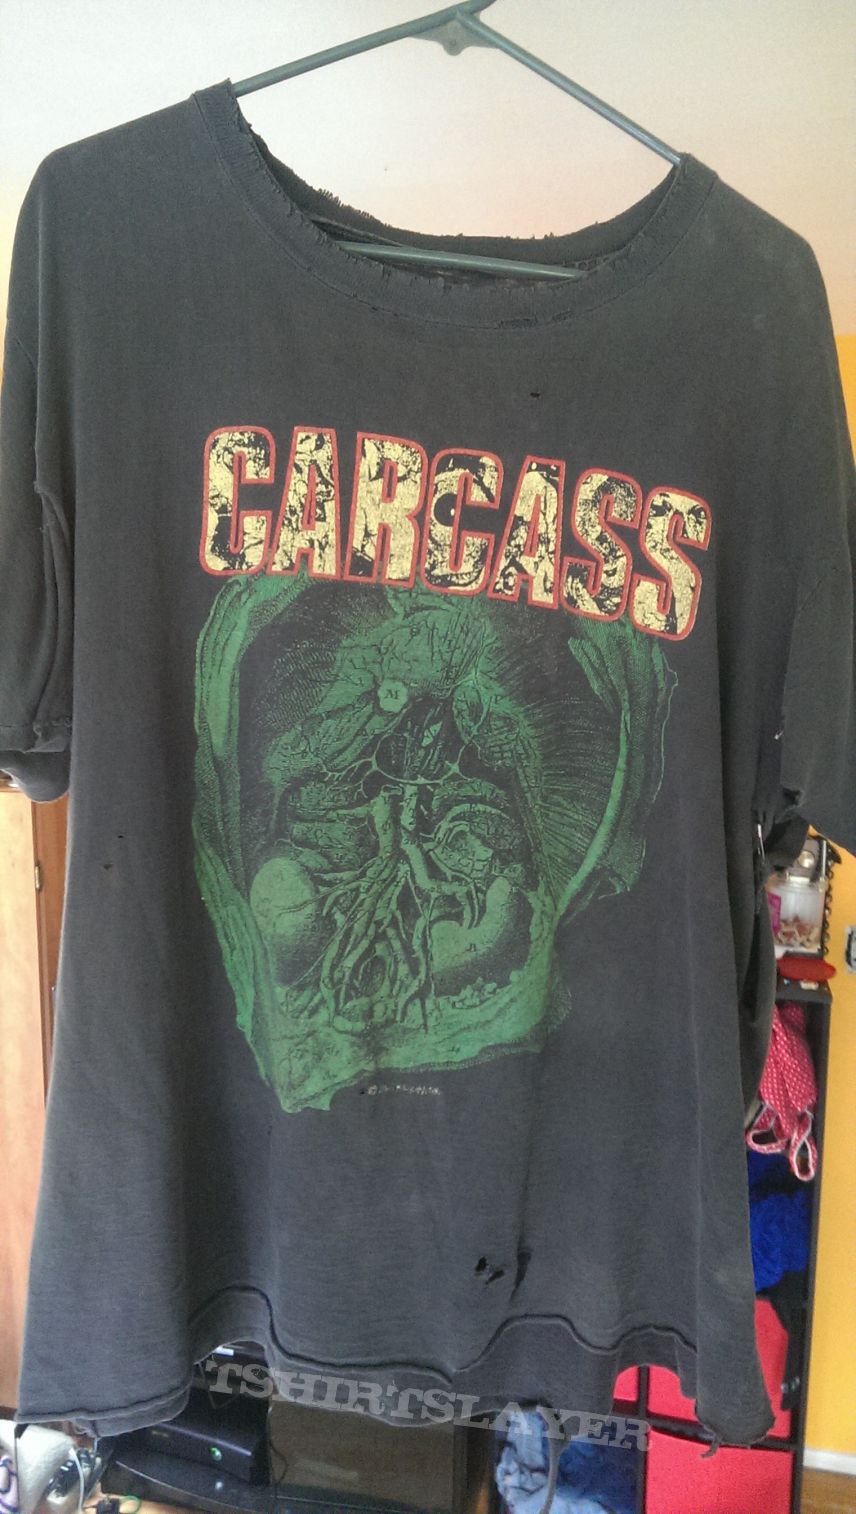 Carcass shirt